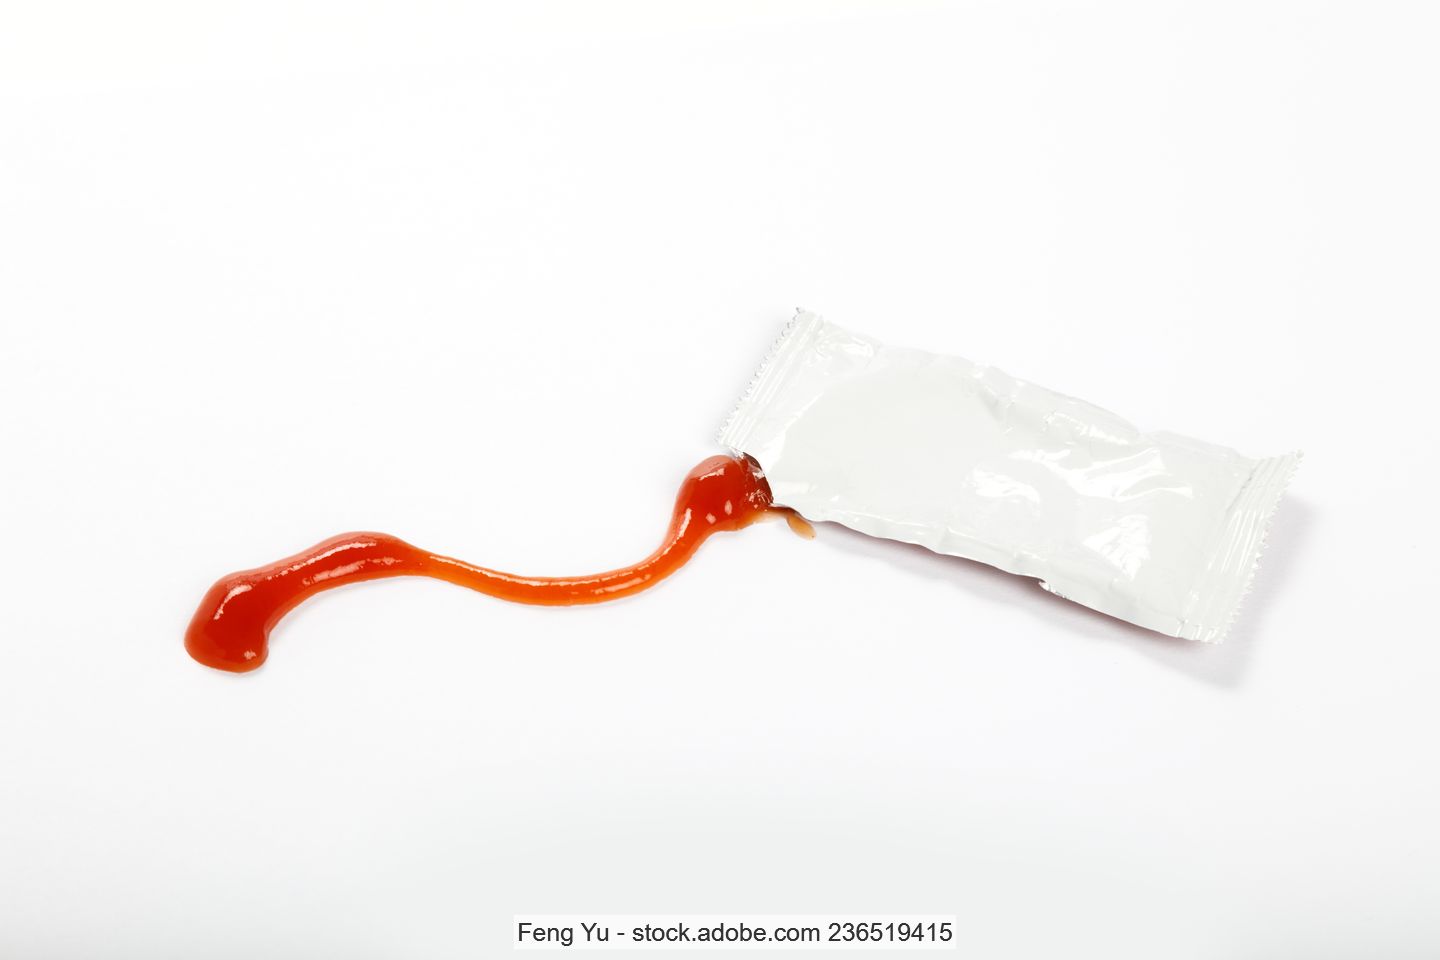 Einzelportion Ketchup in einer geöffneten Sachet-Verpackung